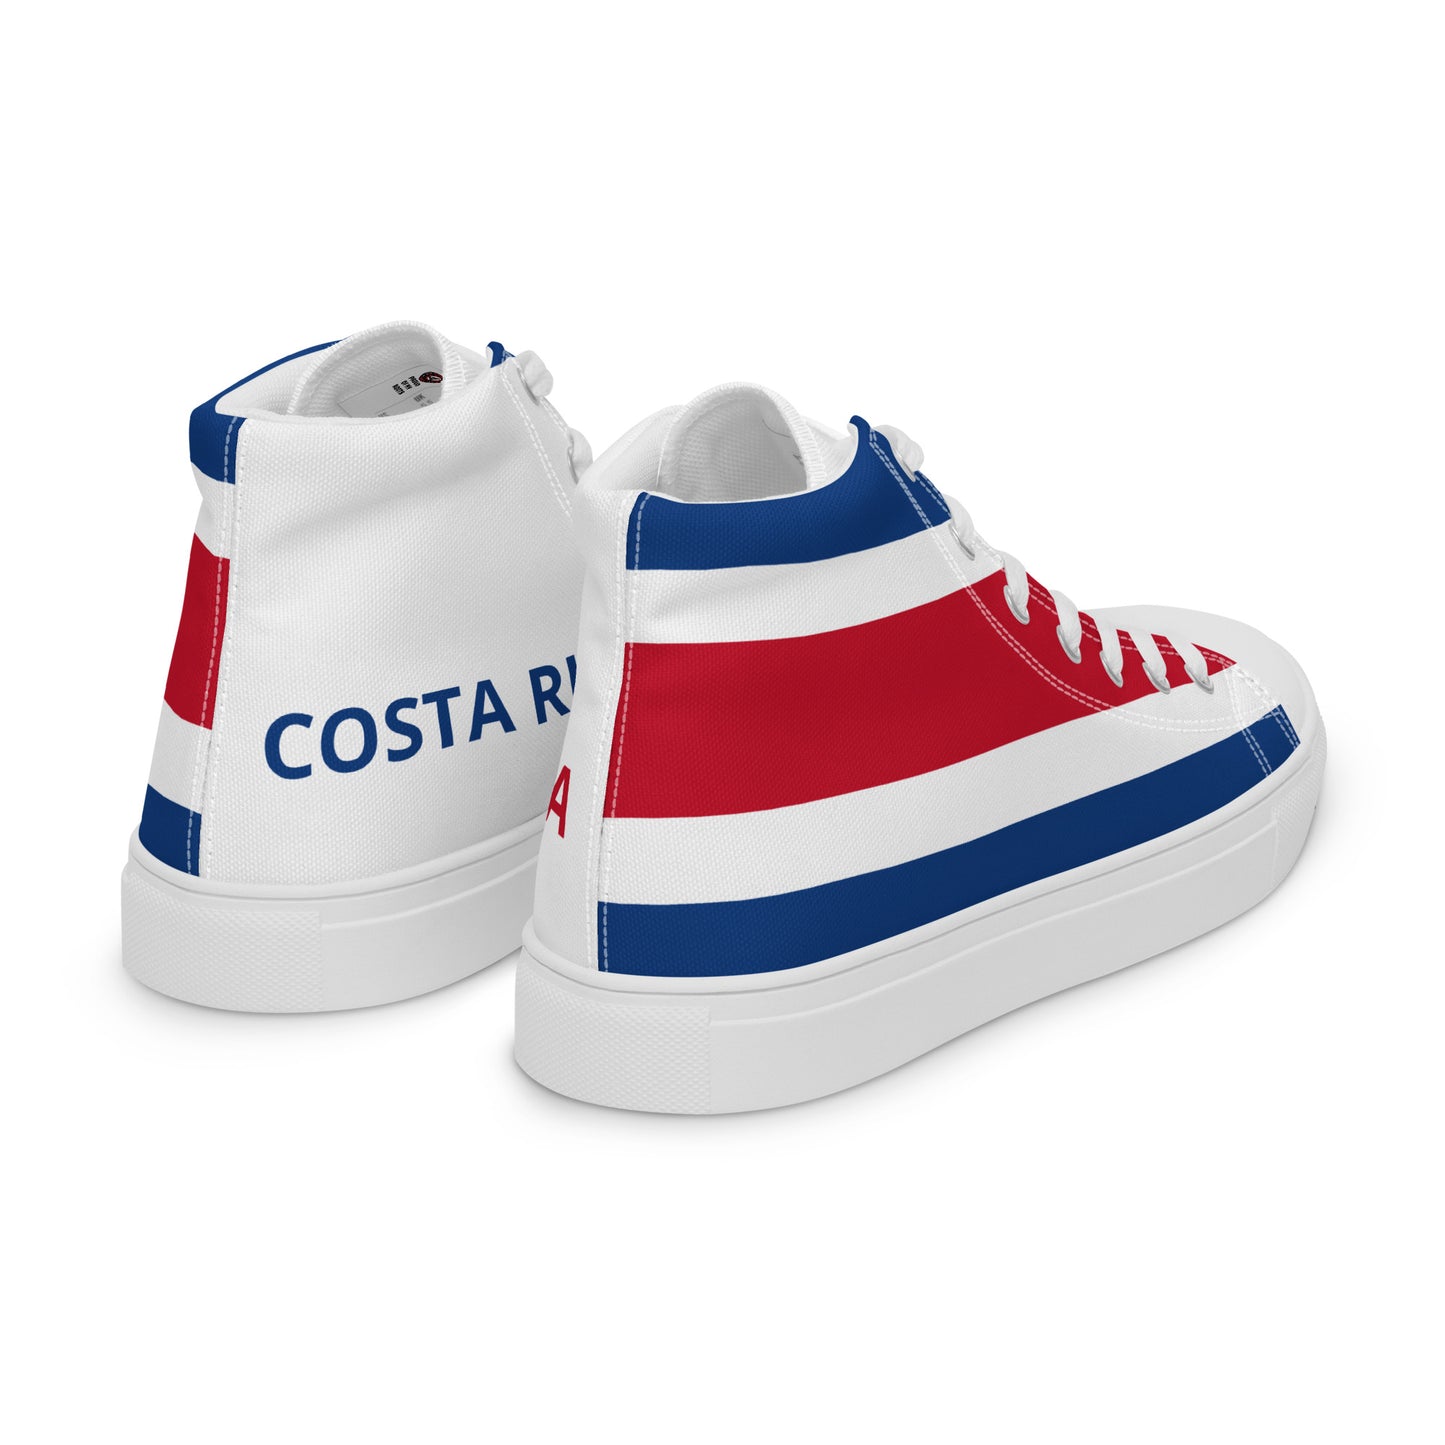 Costa Rica - Mujer - Bandera - Zapatos High top